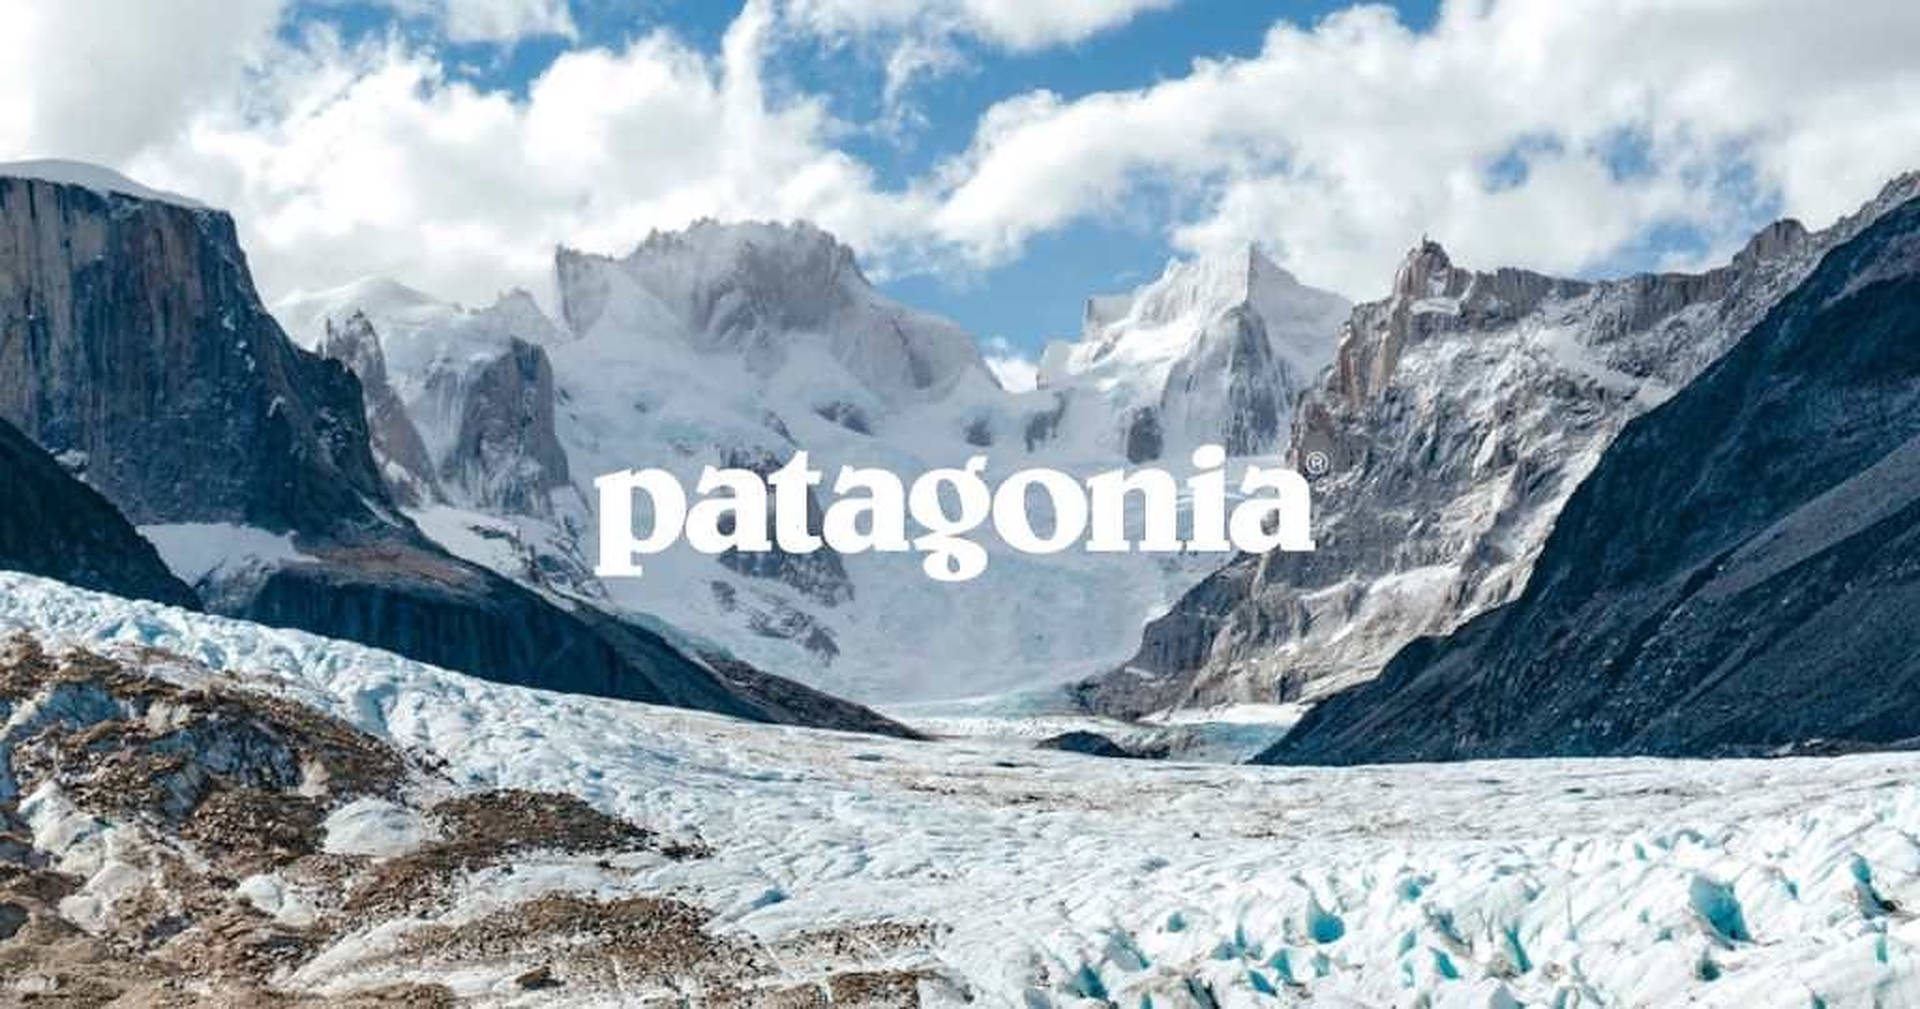 Patagonia Logo Snowy Mountains Background